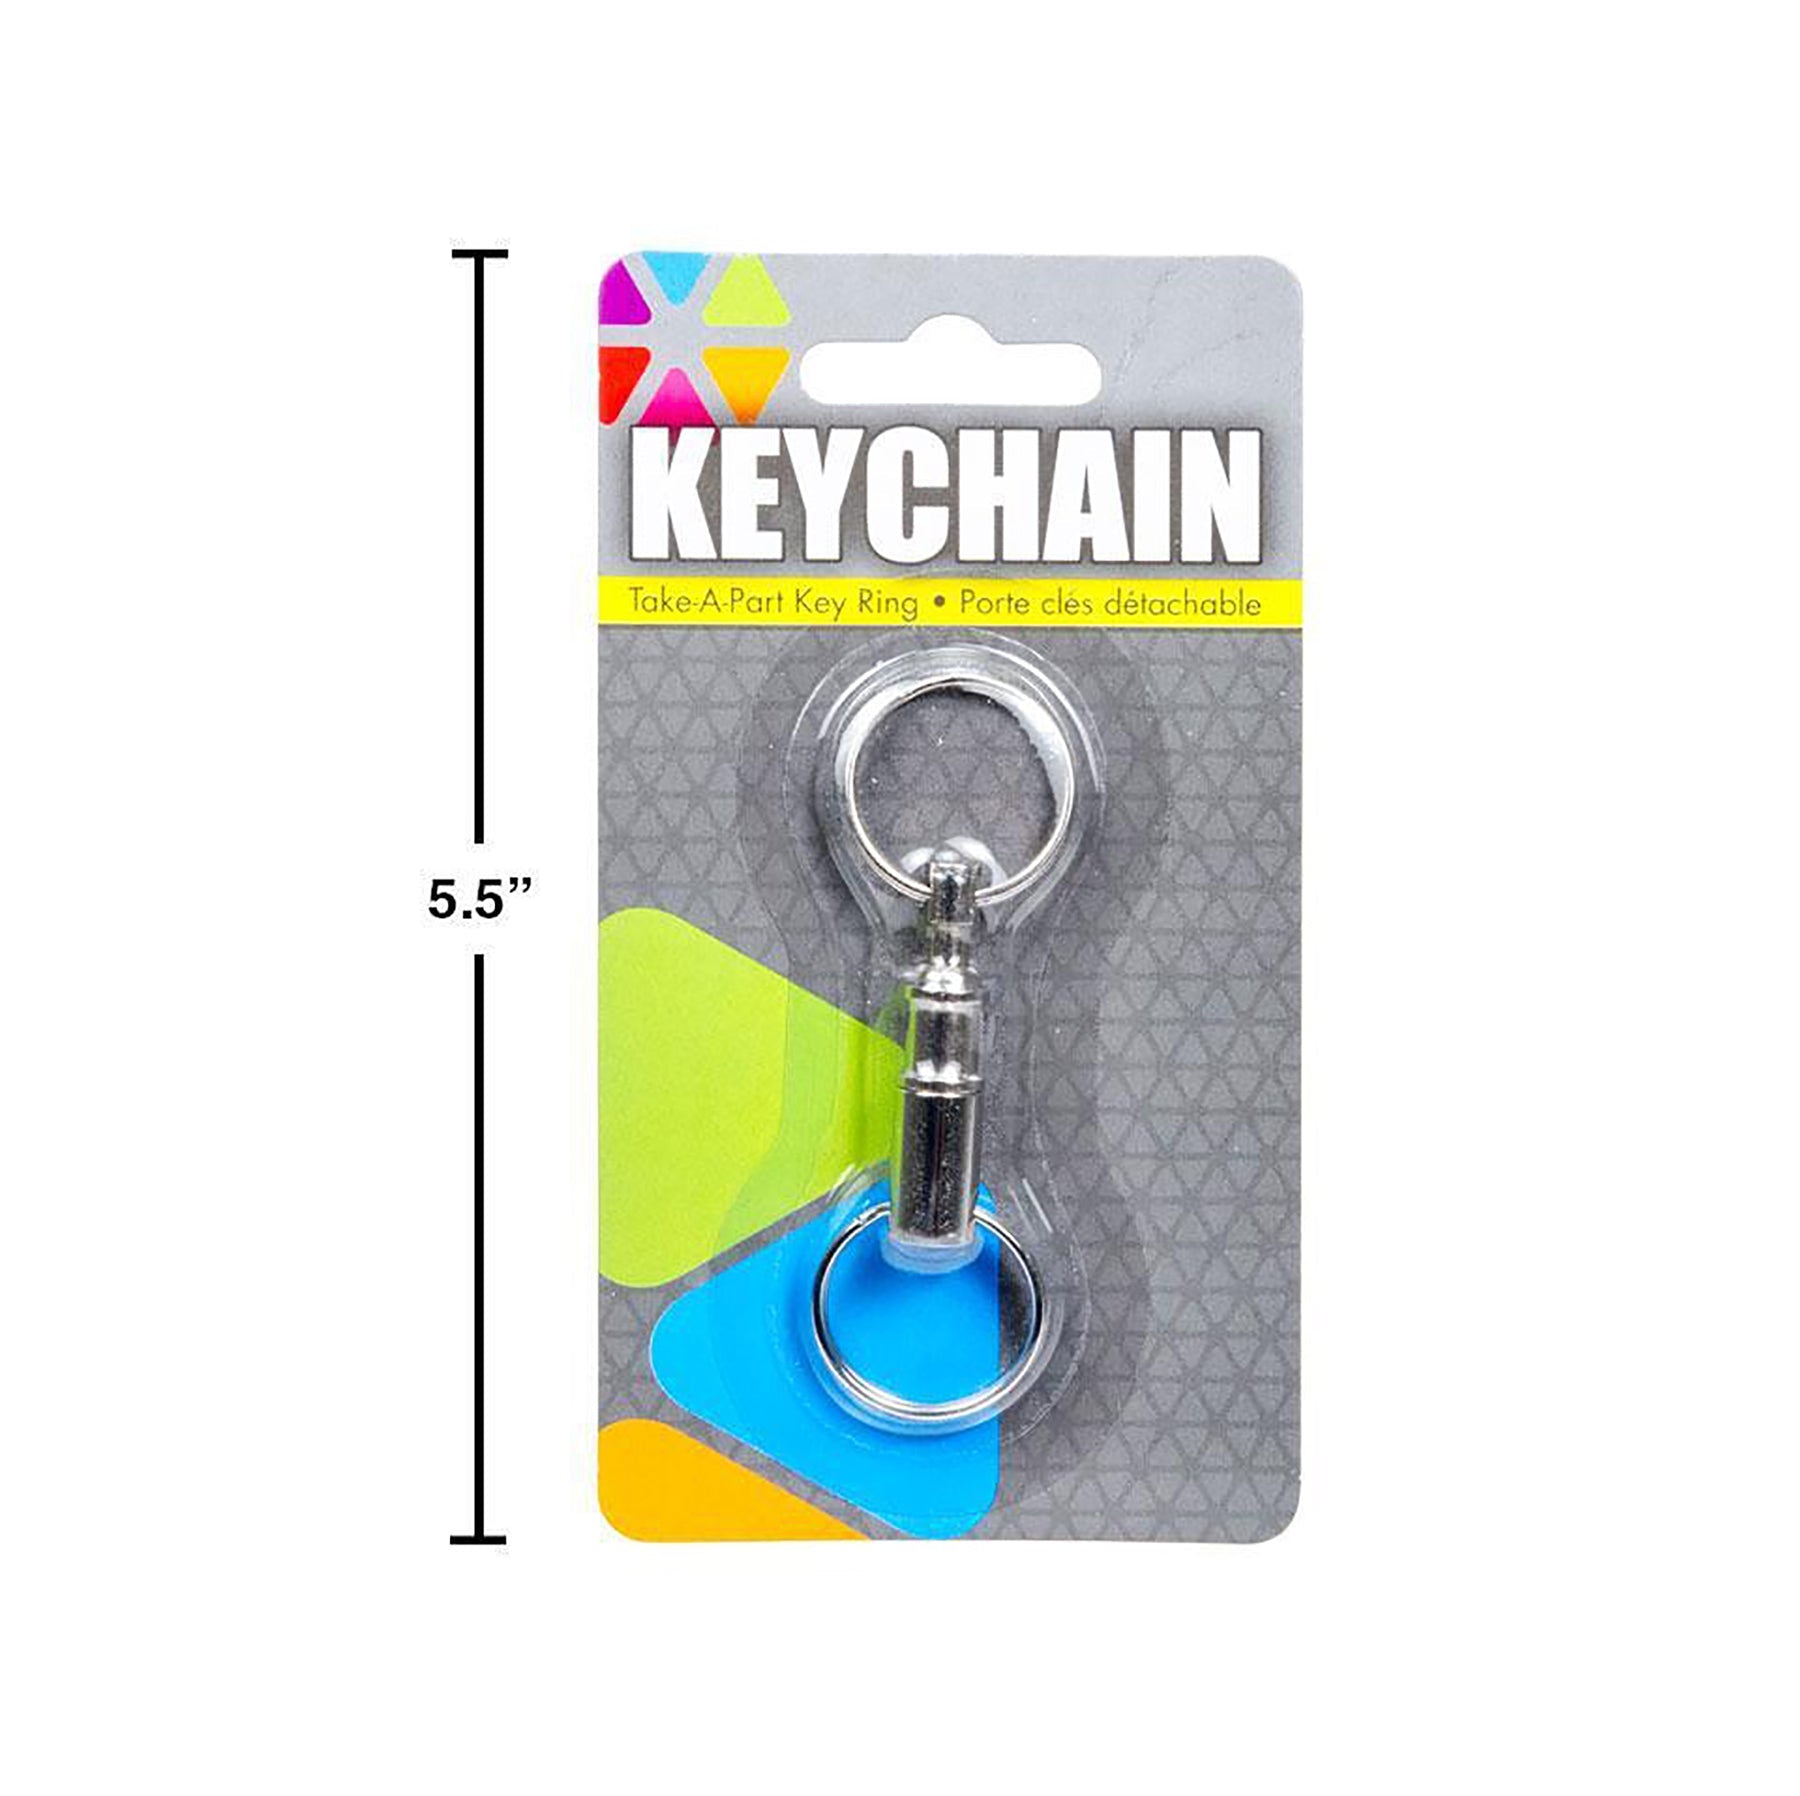 Take-A-Part Metal Key Ring 3.1in